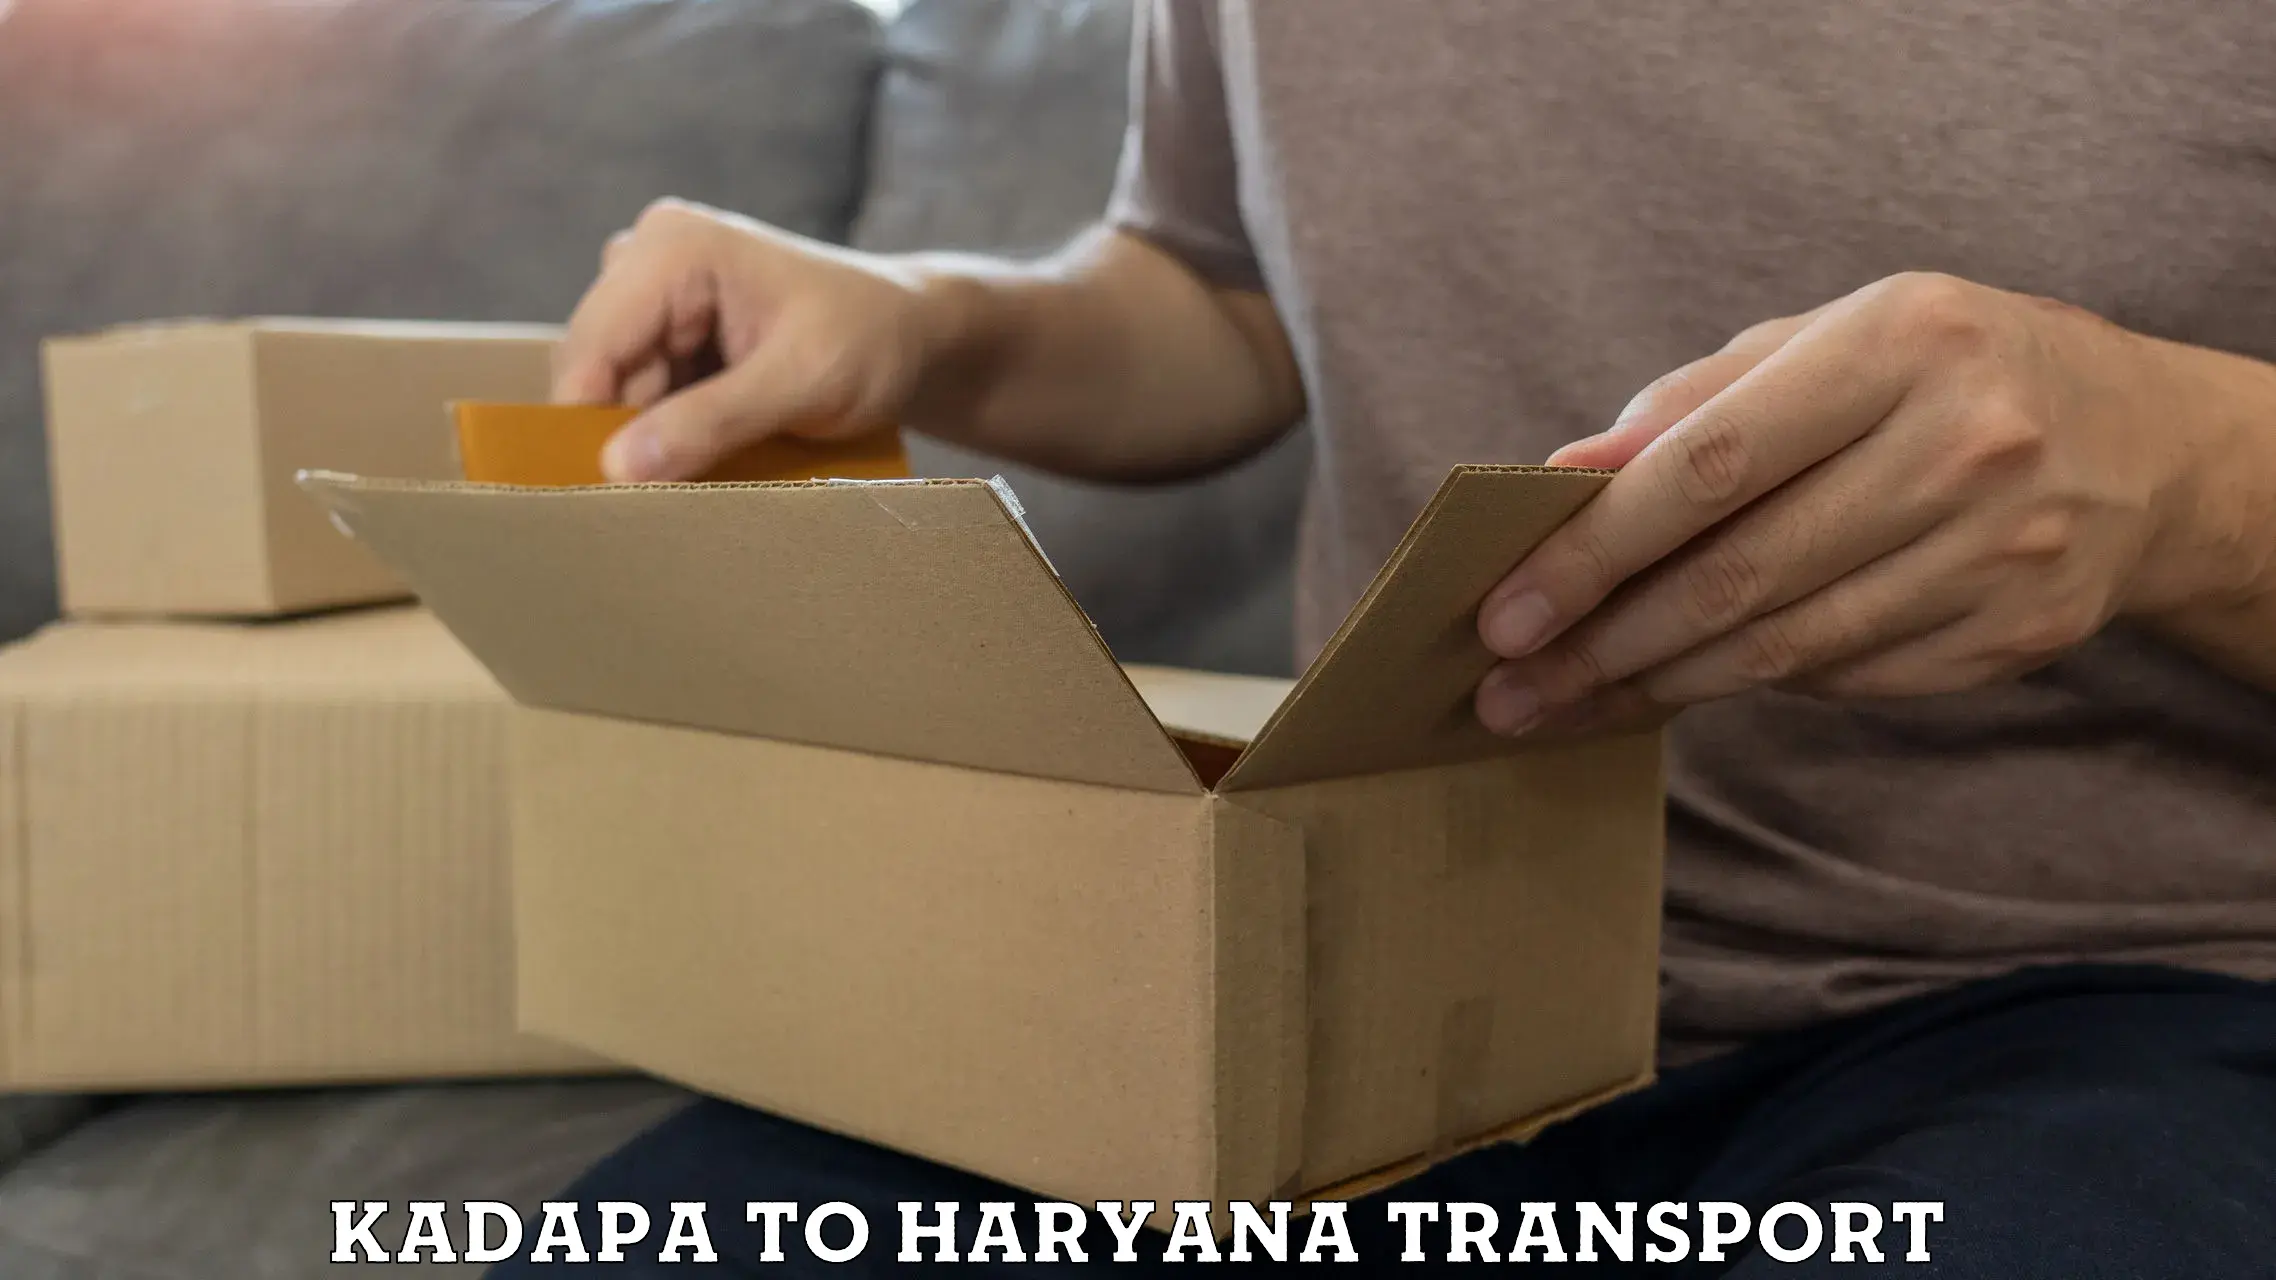 Delivery service Kadapa to Haryana